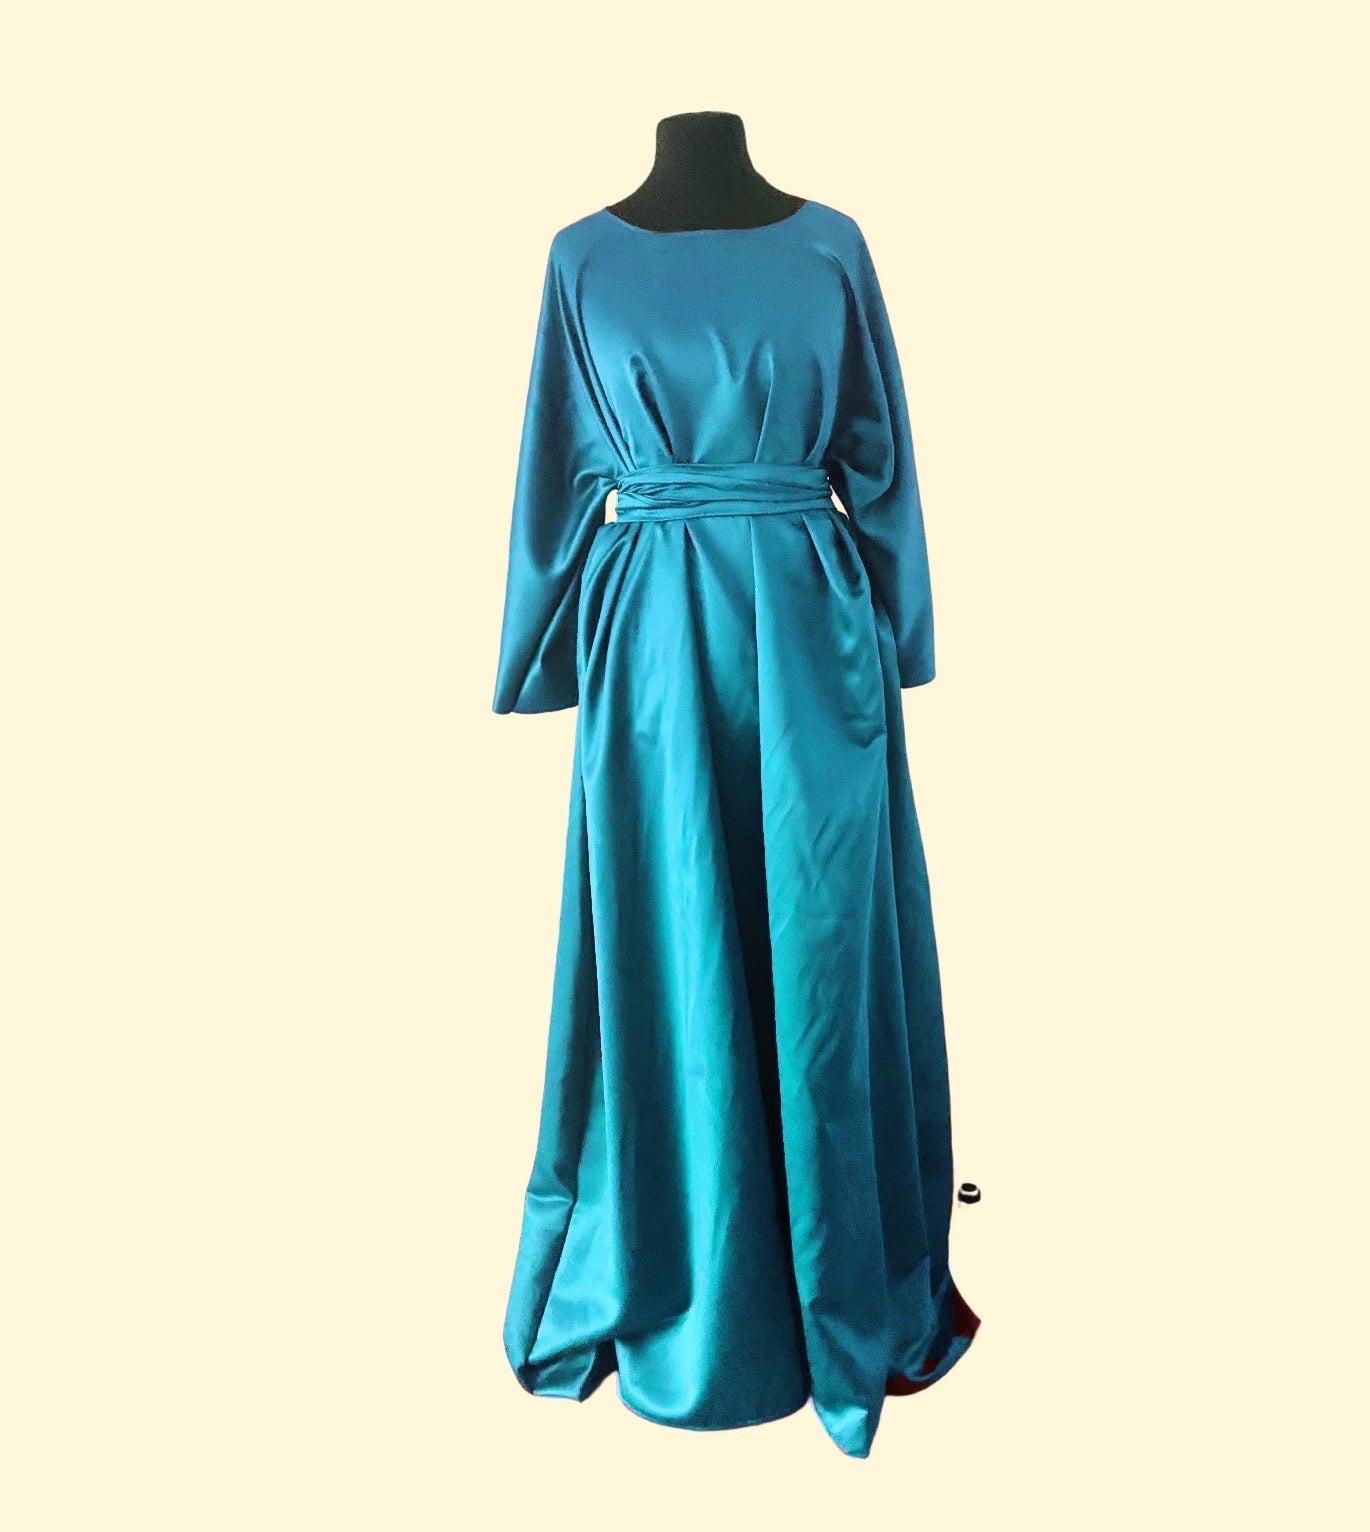 Robe longue ample en Satin - Choix de Couleur - Kaysol Couture